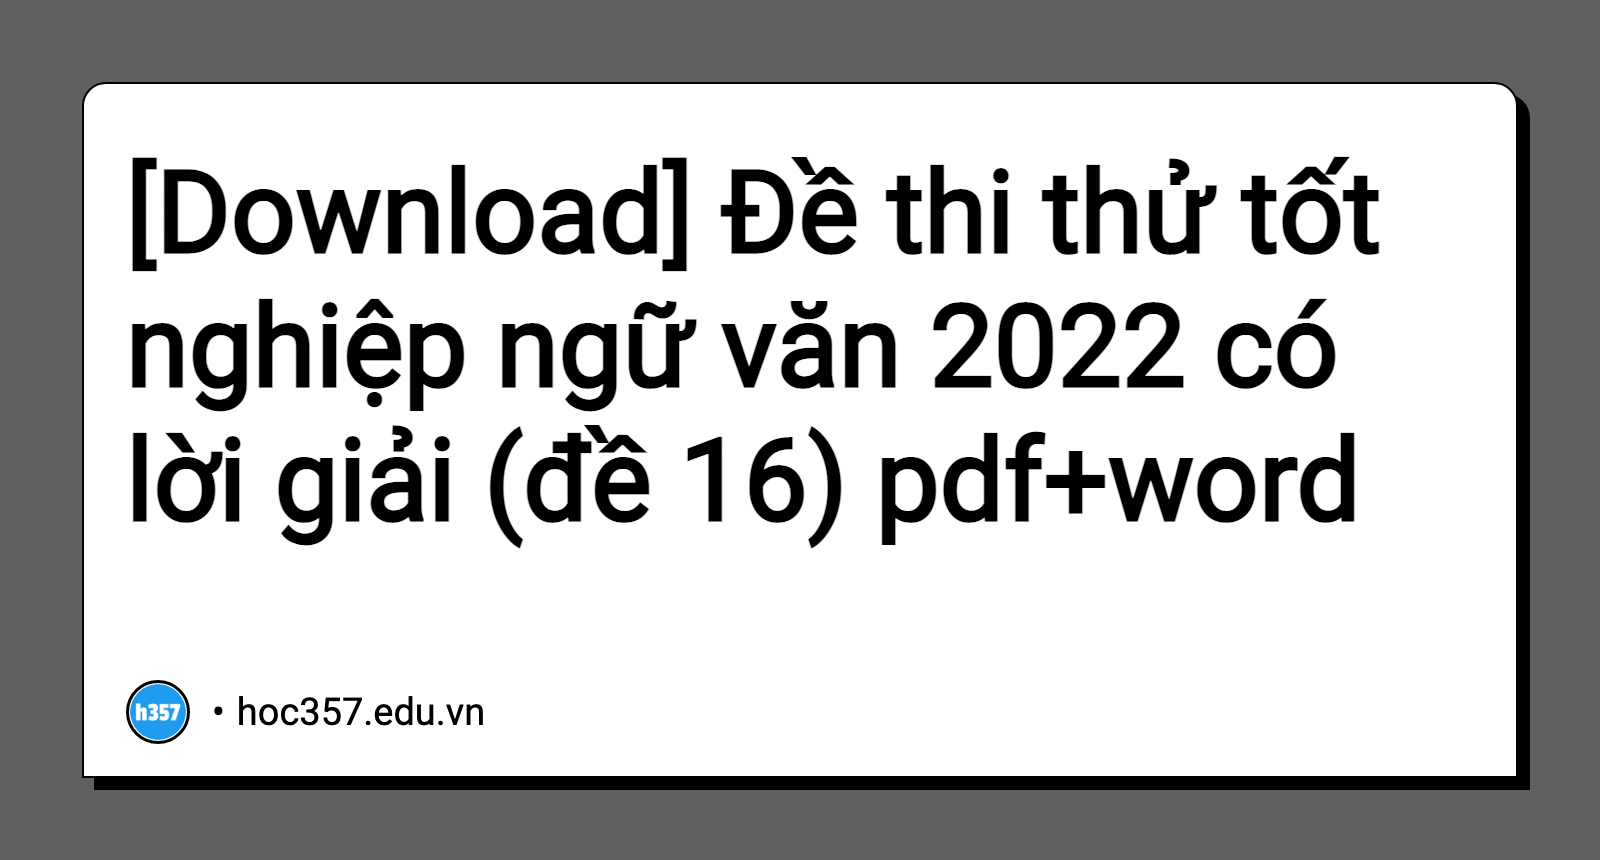 Hình minh họa Đề thi thử tốt nghiệp ngữ văn 2022 có lời giải (đề 16)